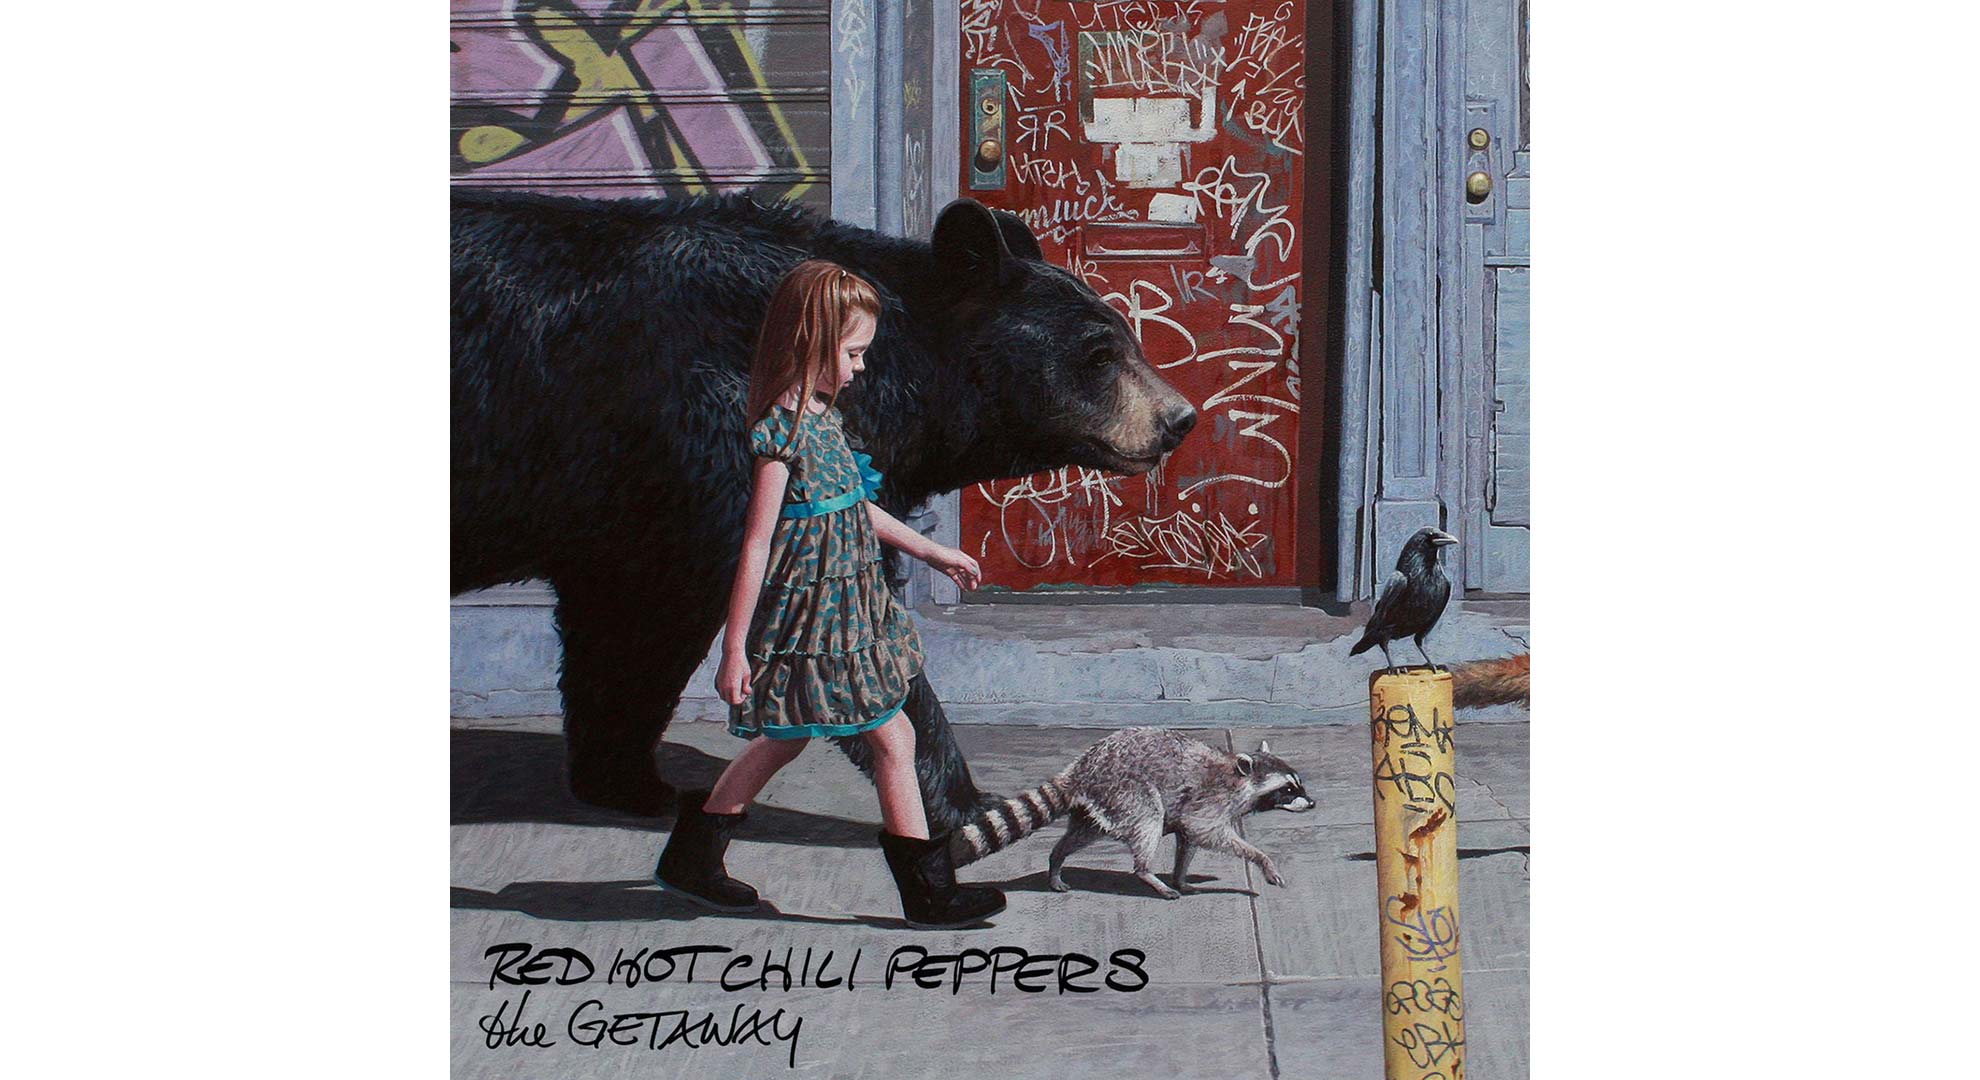 Red hot peppers dark necessities. The Getaway Red hot Chili Peppers. RHCP the Getaway. Кевин Петерсон художник. The Getaway Red hot Chili Peppers обложка.